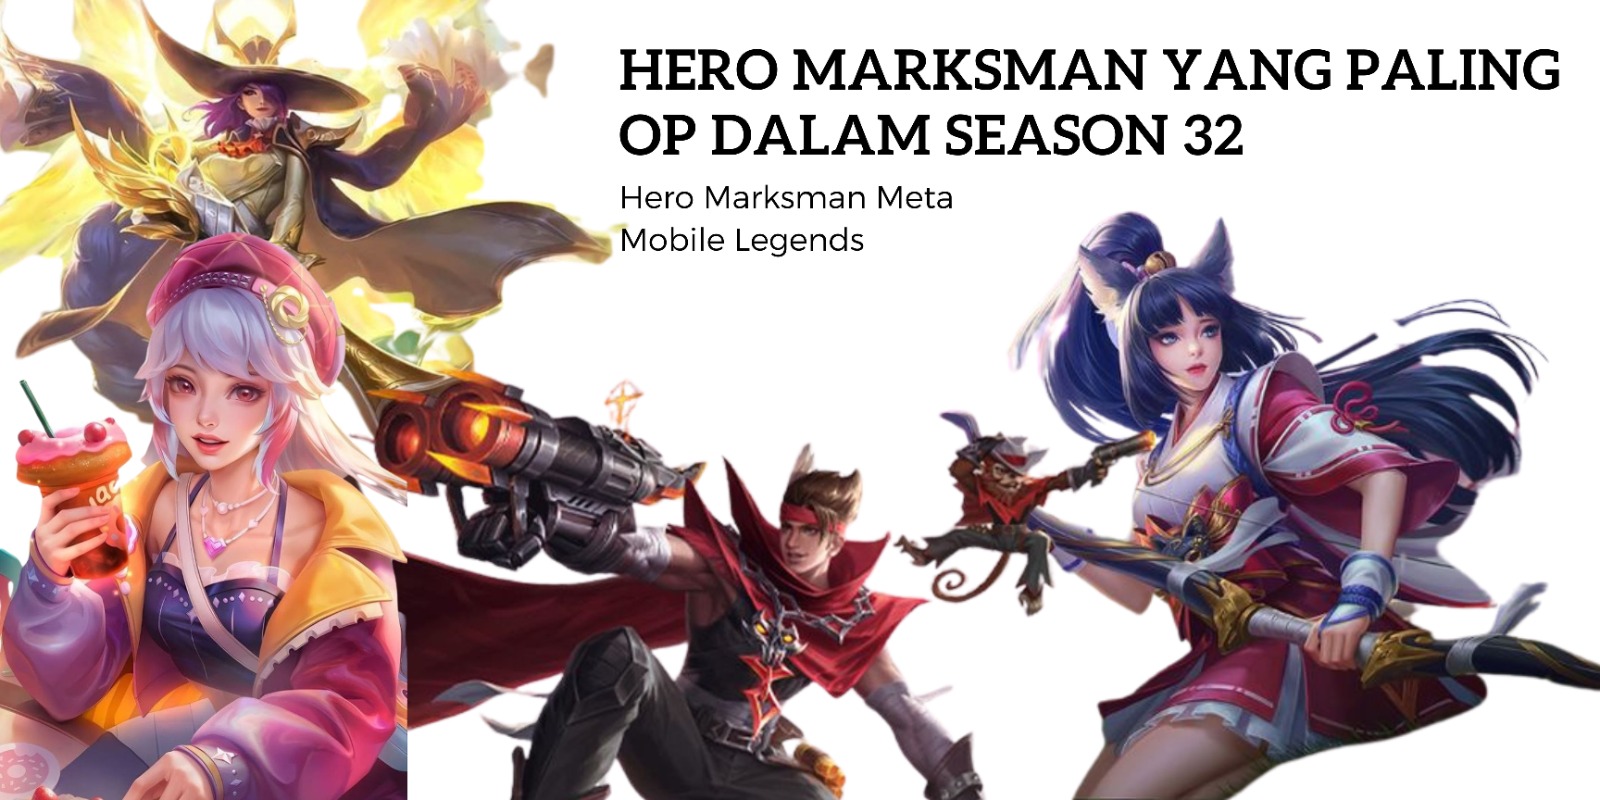 Hero Marksman Yang Paling OP dalam Season 32 Mobile Legends Masuk Meta